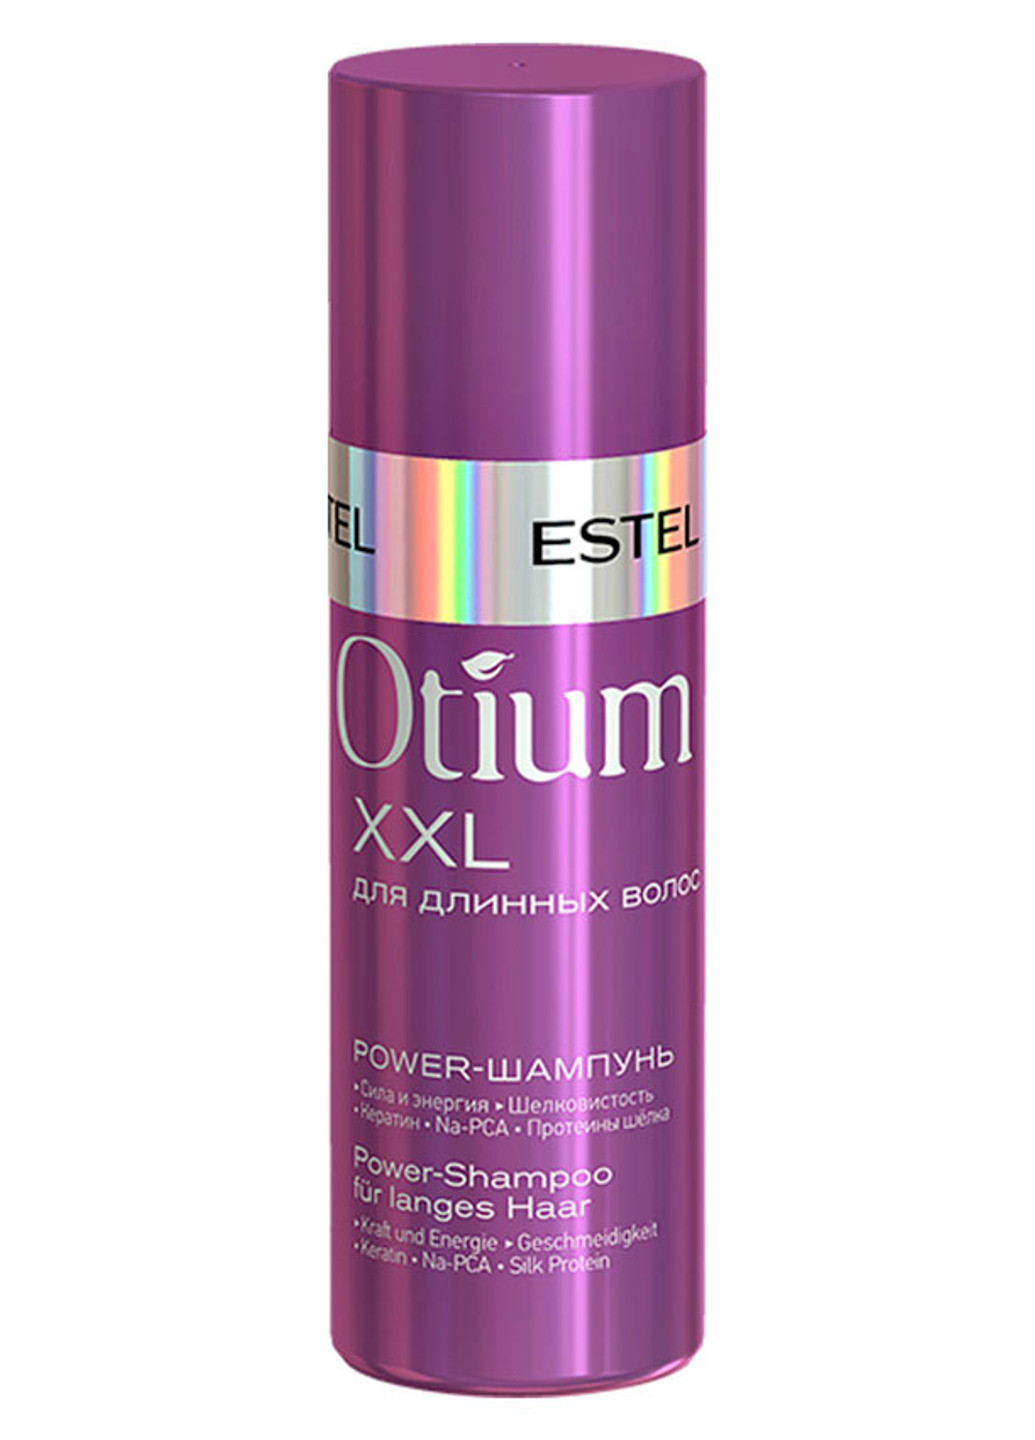 Power-бальзам для длинных волос Otium XXL 10 мл Estel Professional (190301589)